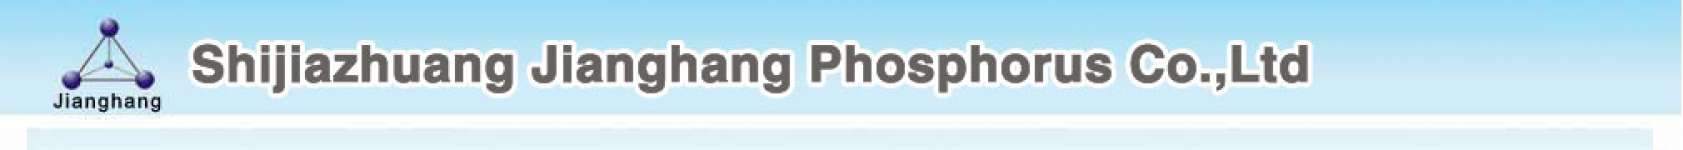 shijiazhuang jianghang phosphorus chemicals industries co.,  ltd